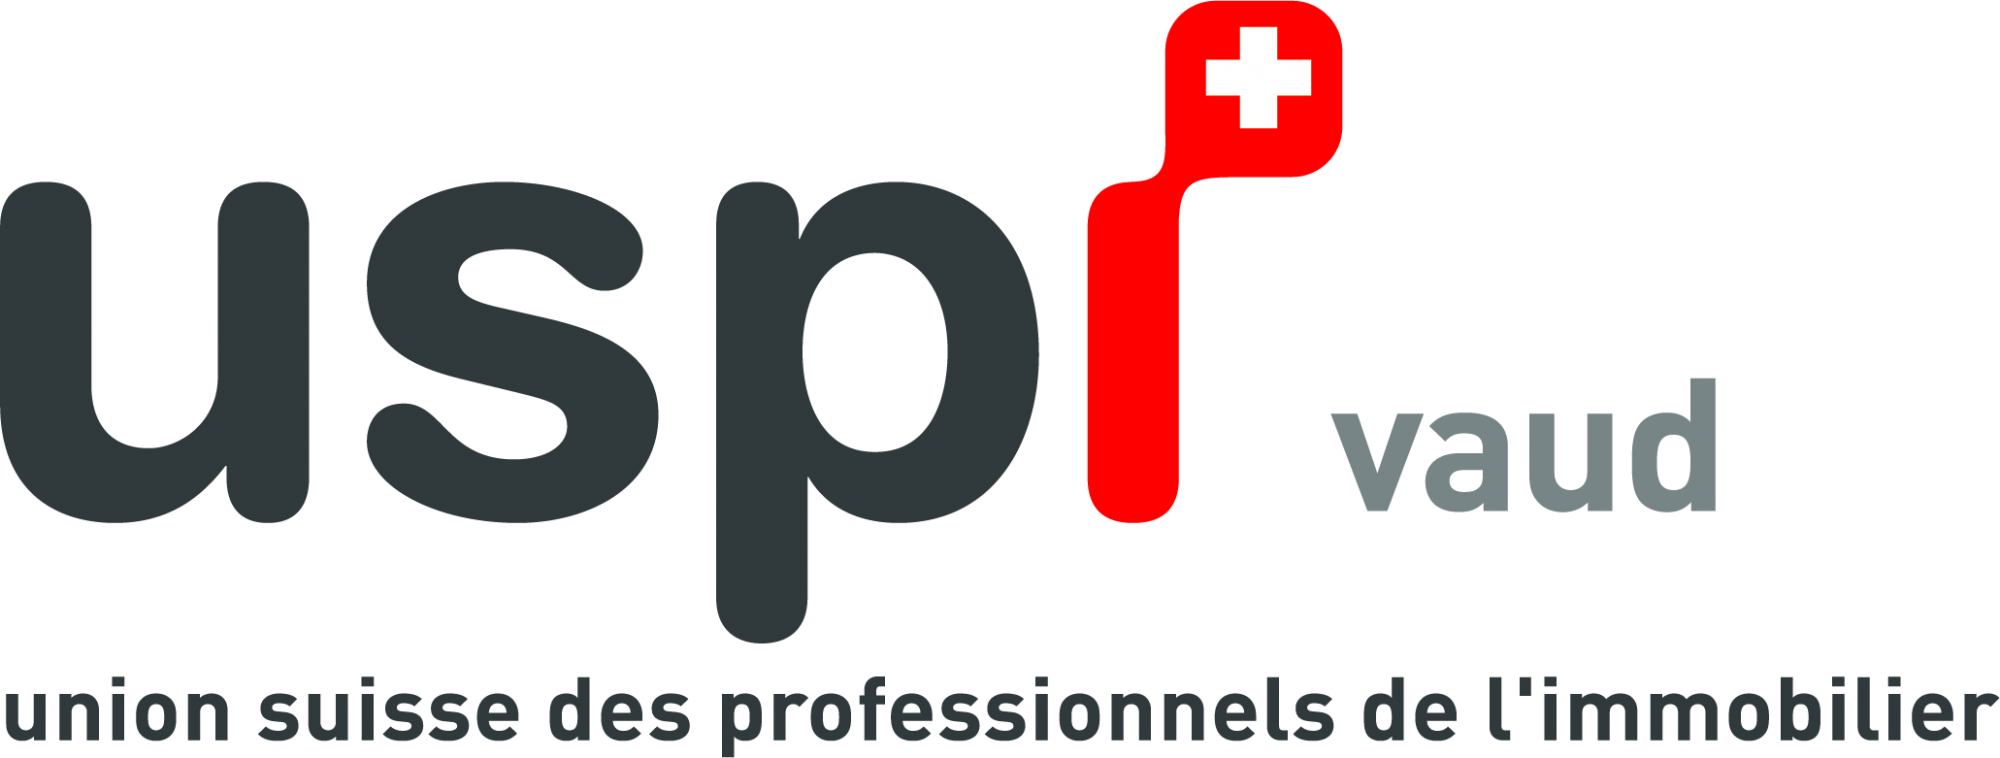 UPSI logo